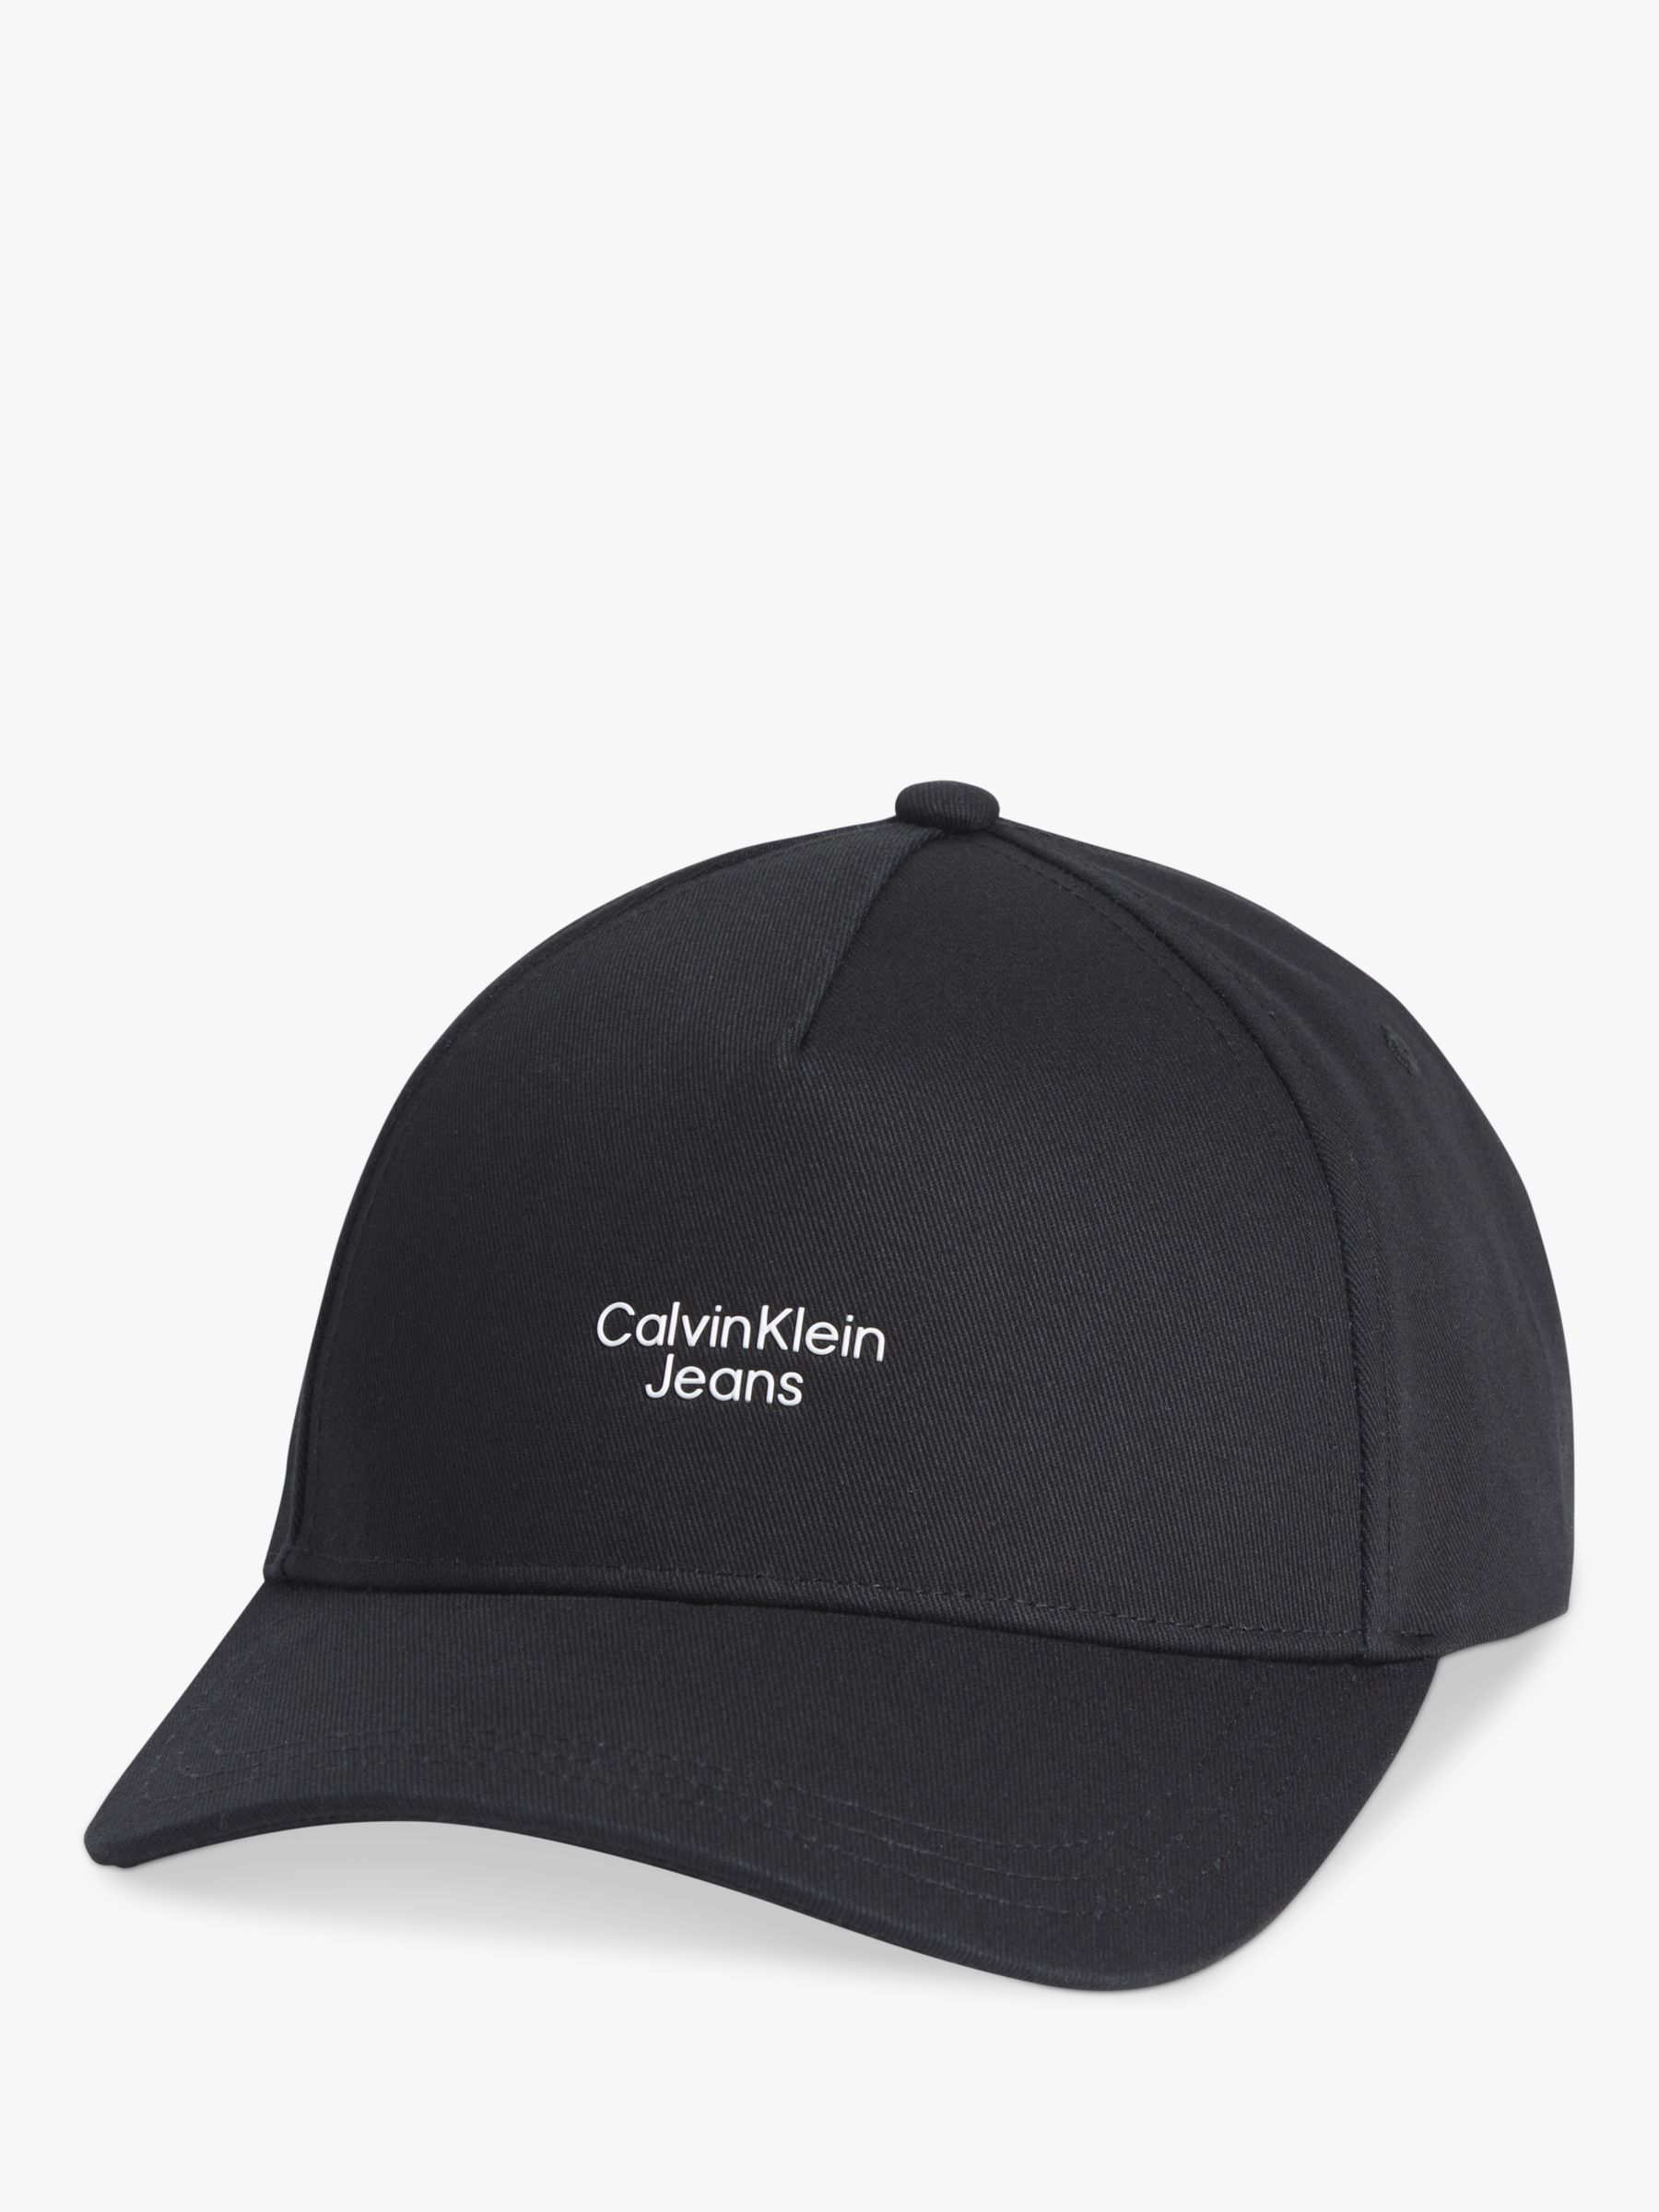 Calvin Klein Jeans Dynamic Baseball Cap, One Size, Black